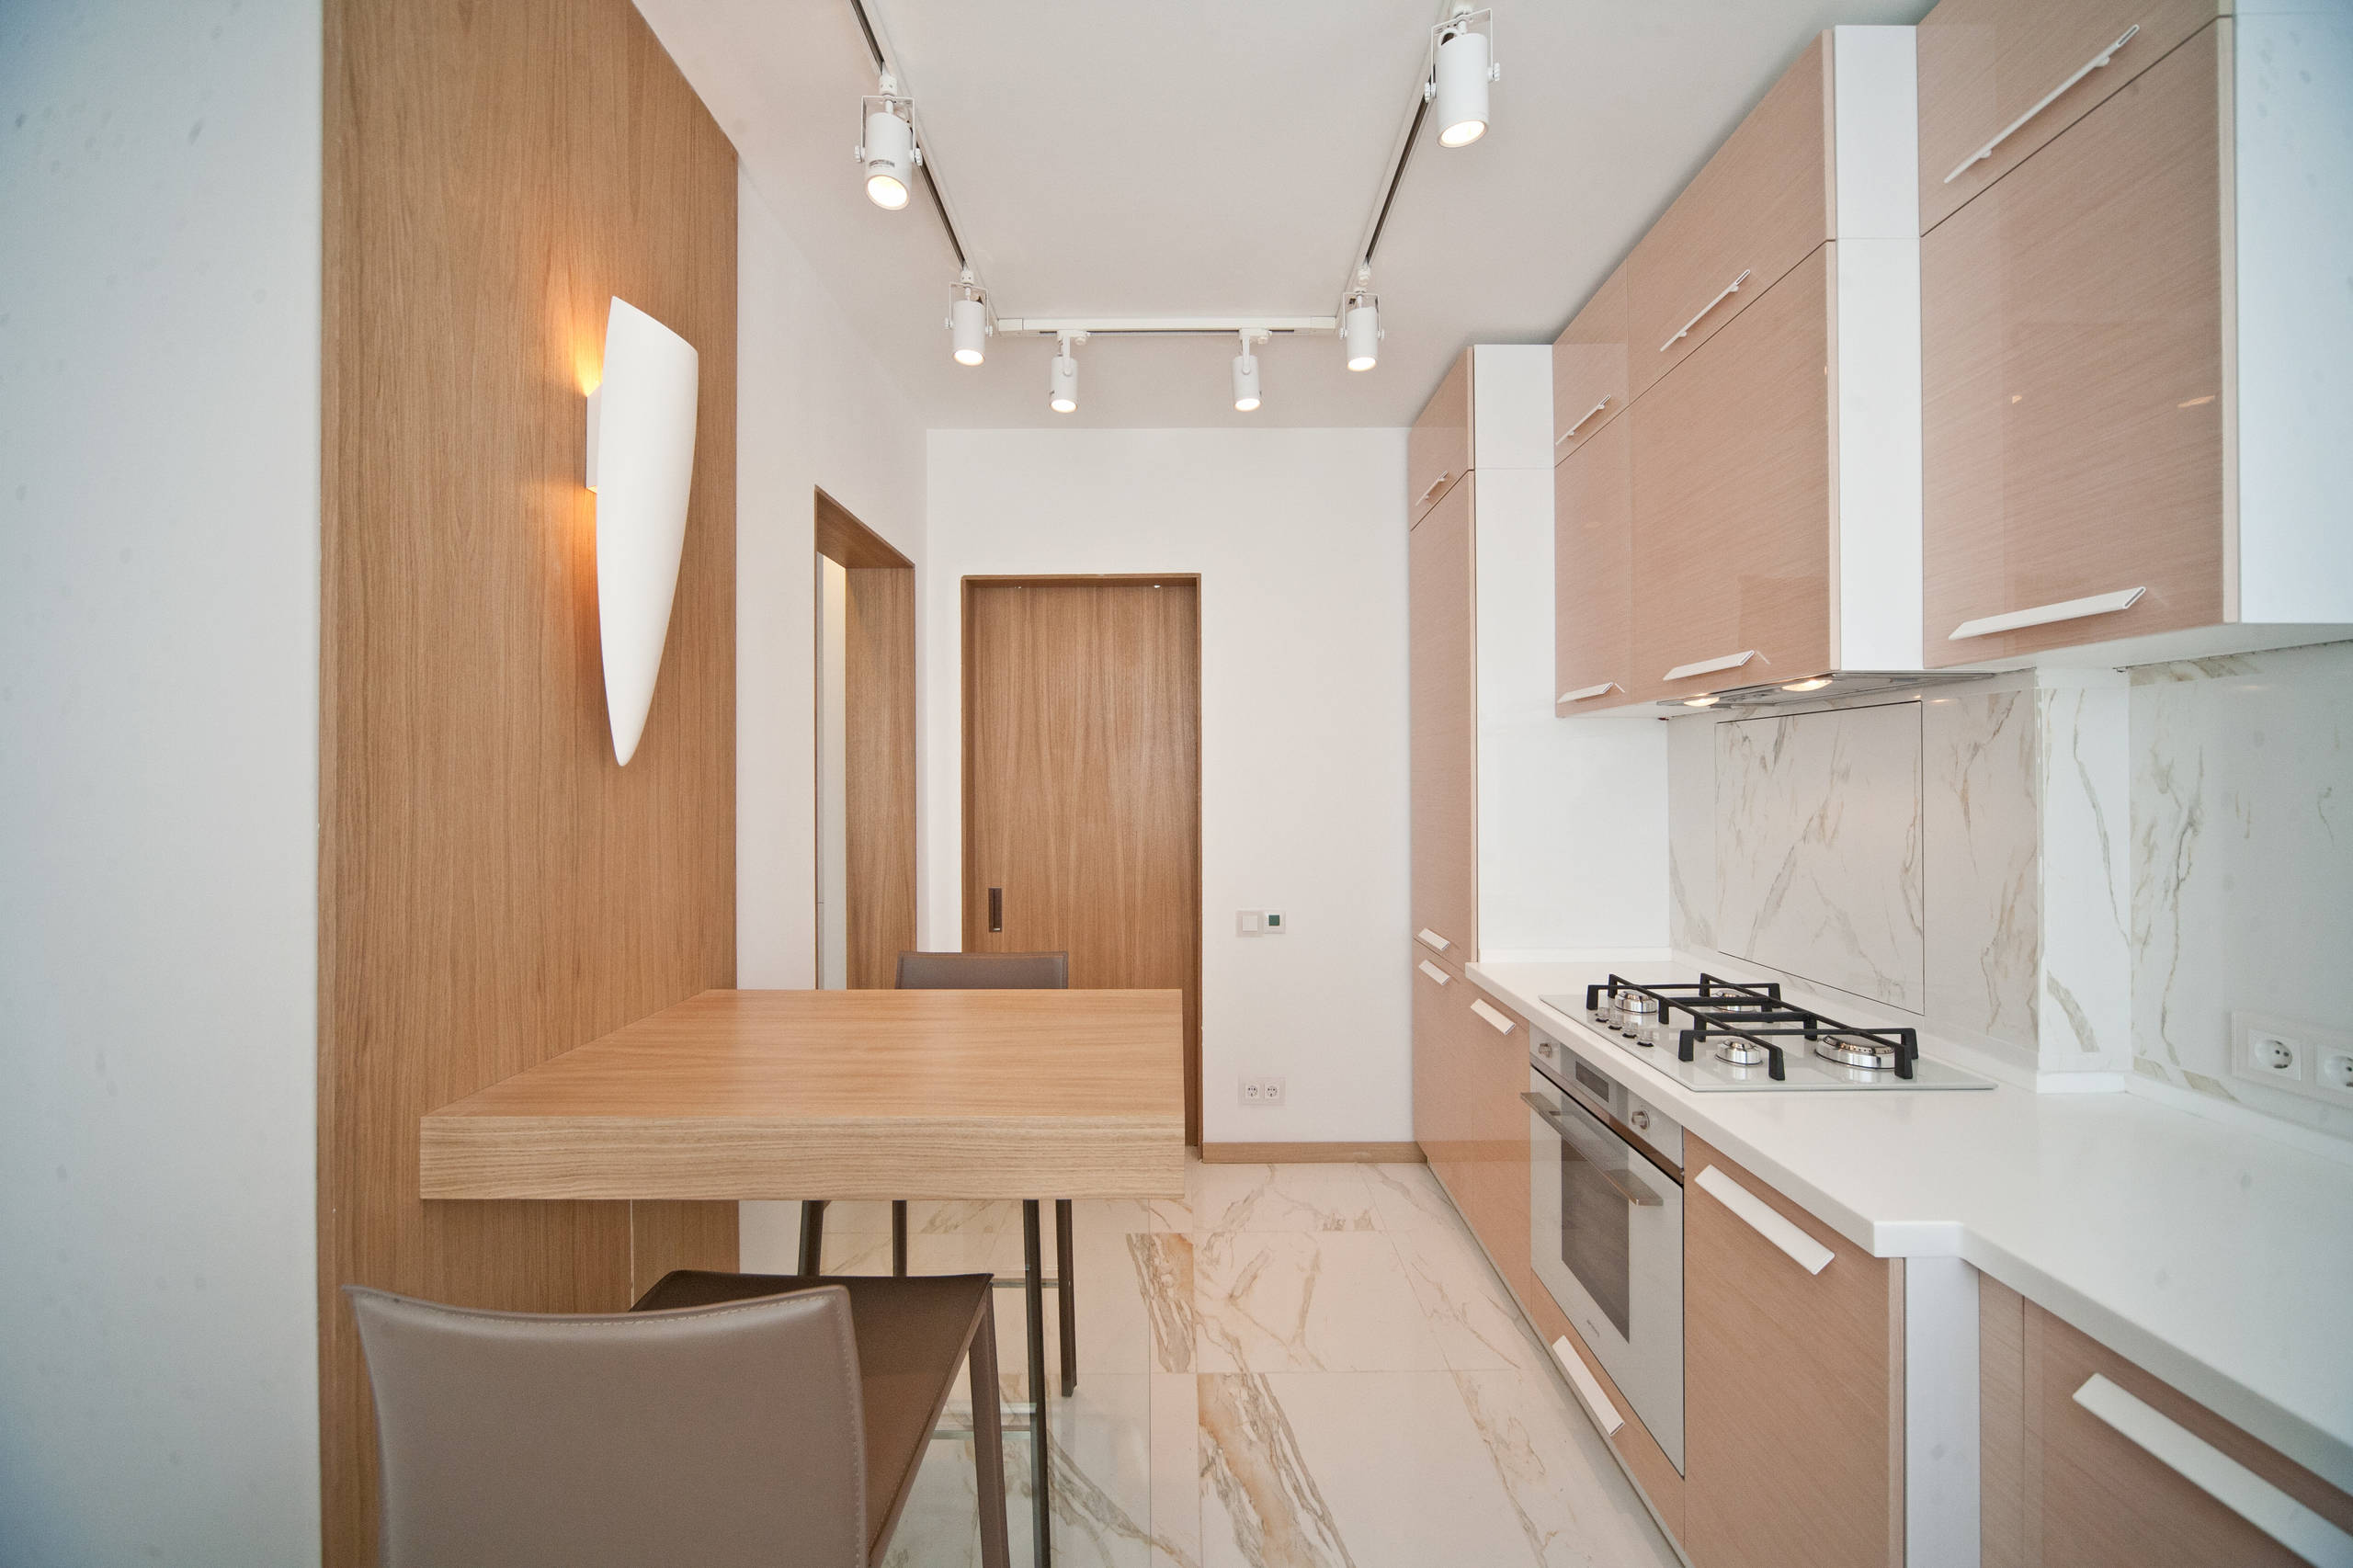 Дизайн-проект кухни в хрущевке - интерьер маленькой кухни в квартире-хрущевке